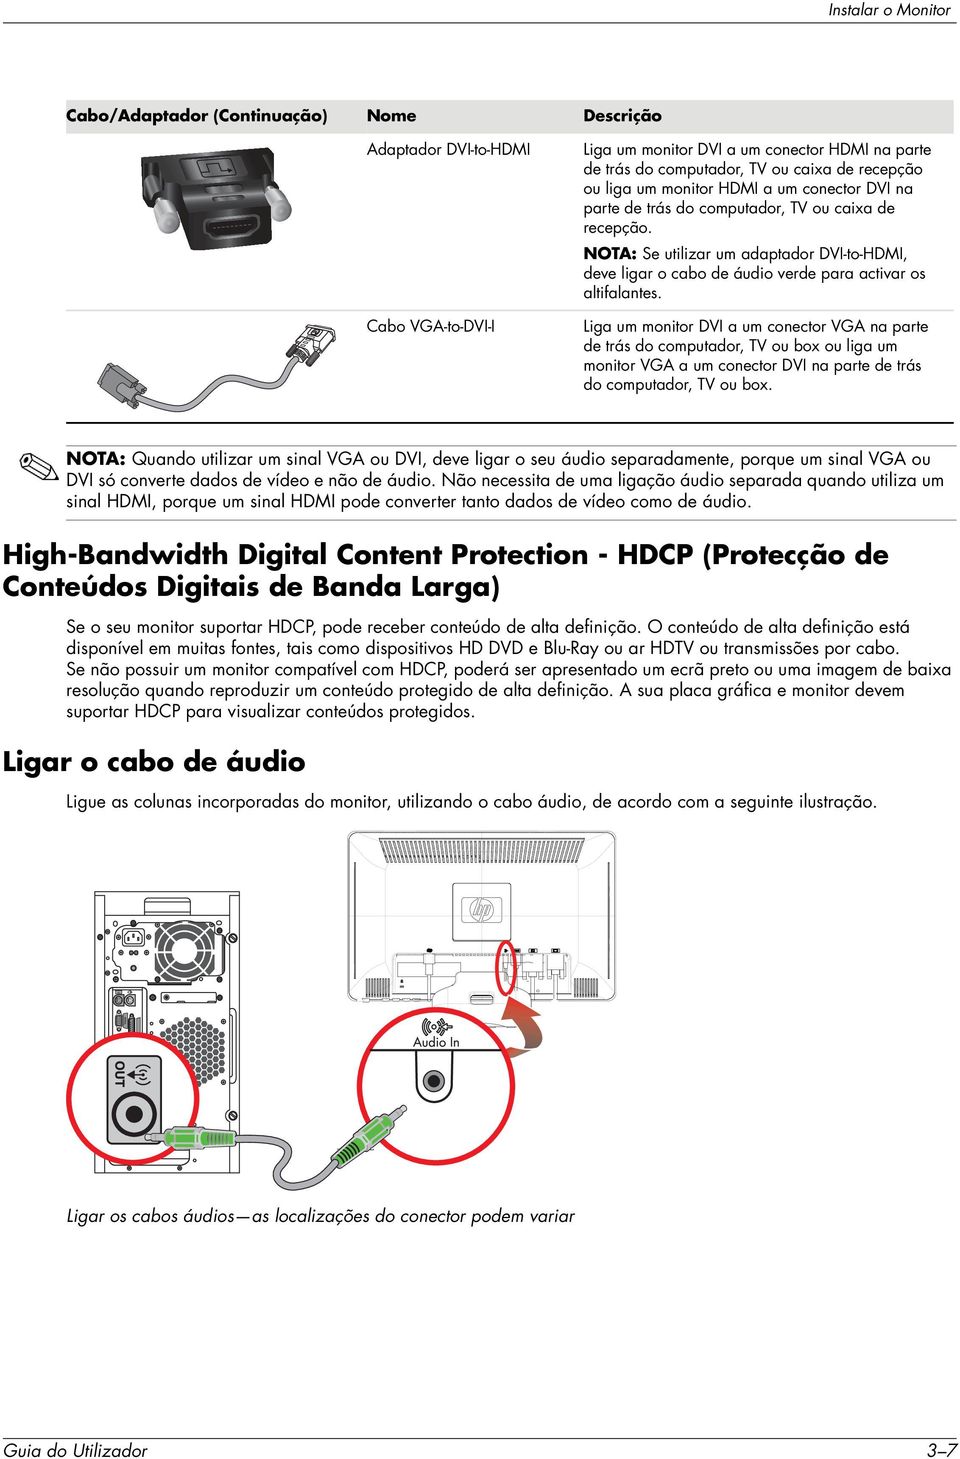 NOTA: Se utilizar um adaptador DVI-to-HDMI, deve ligar o cabo de áudio verde para activar os altifalantes.